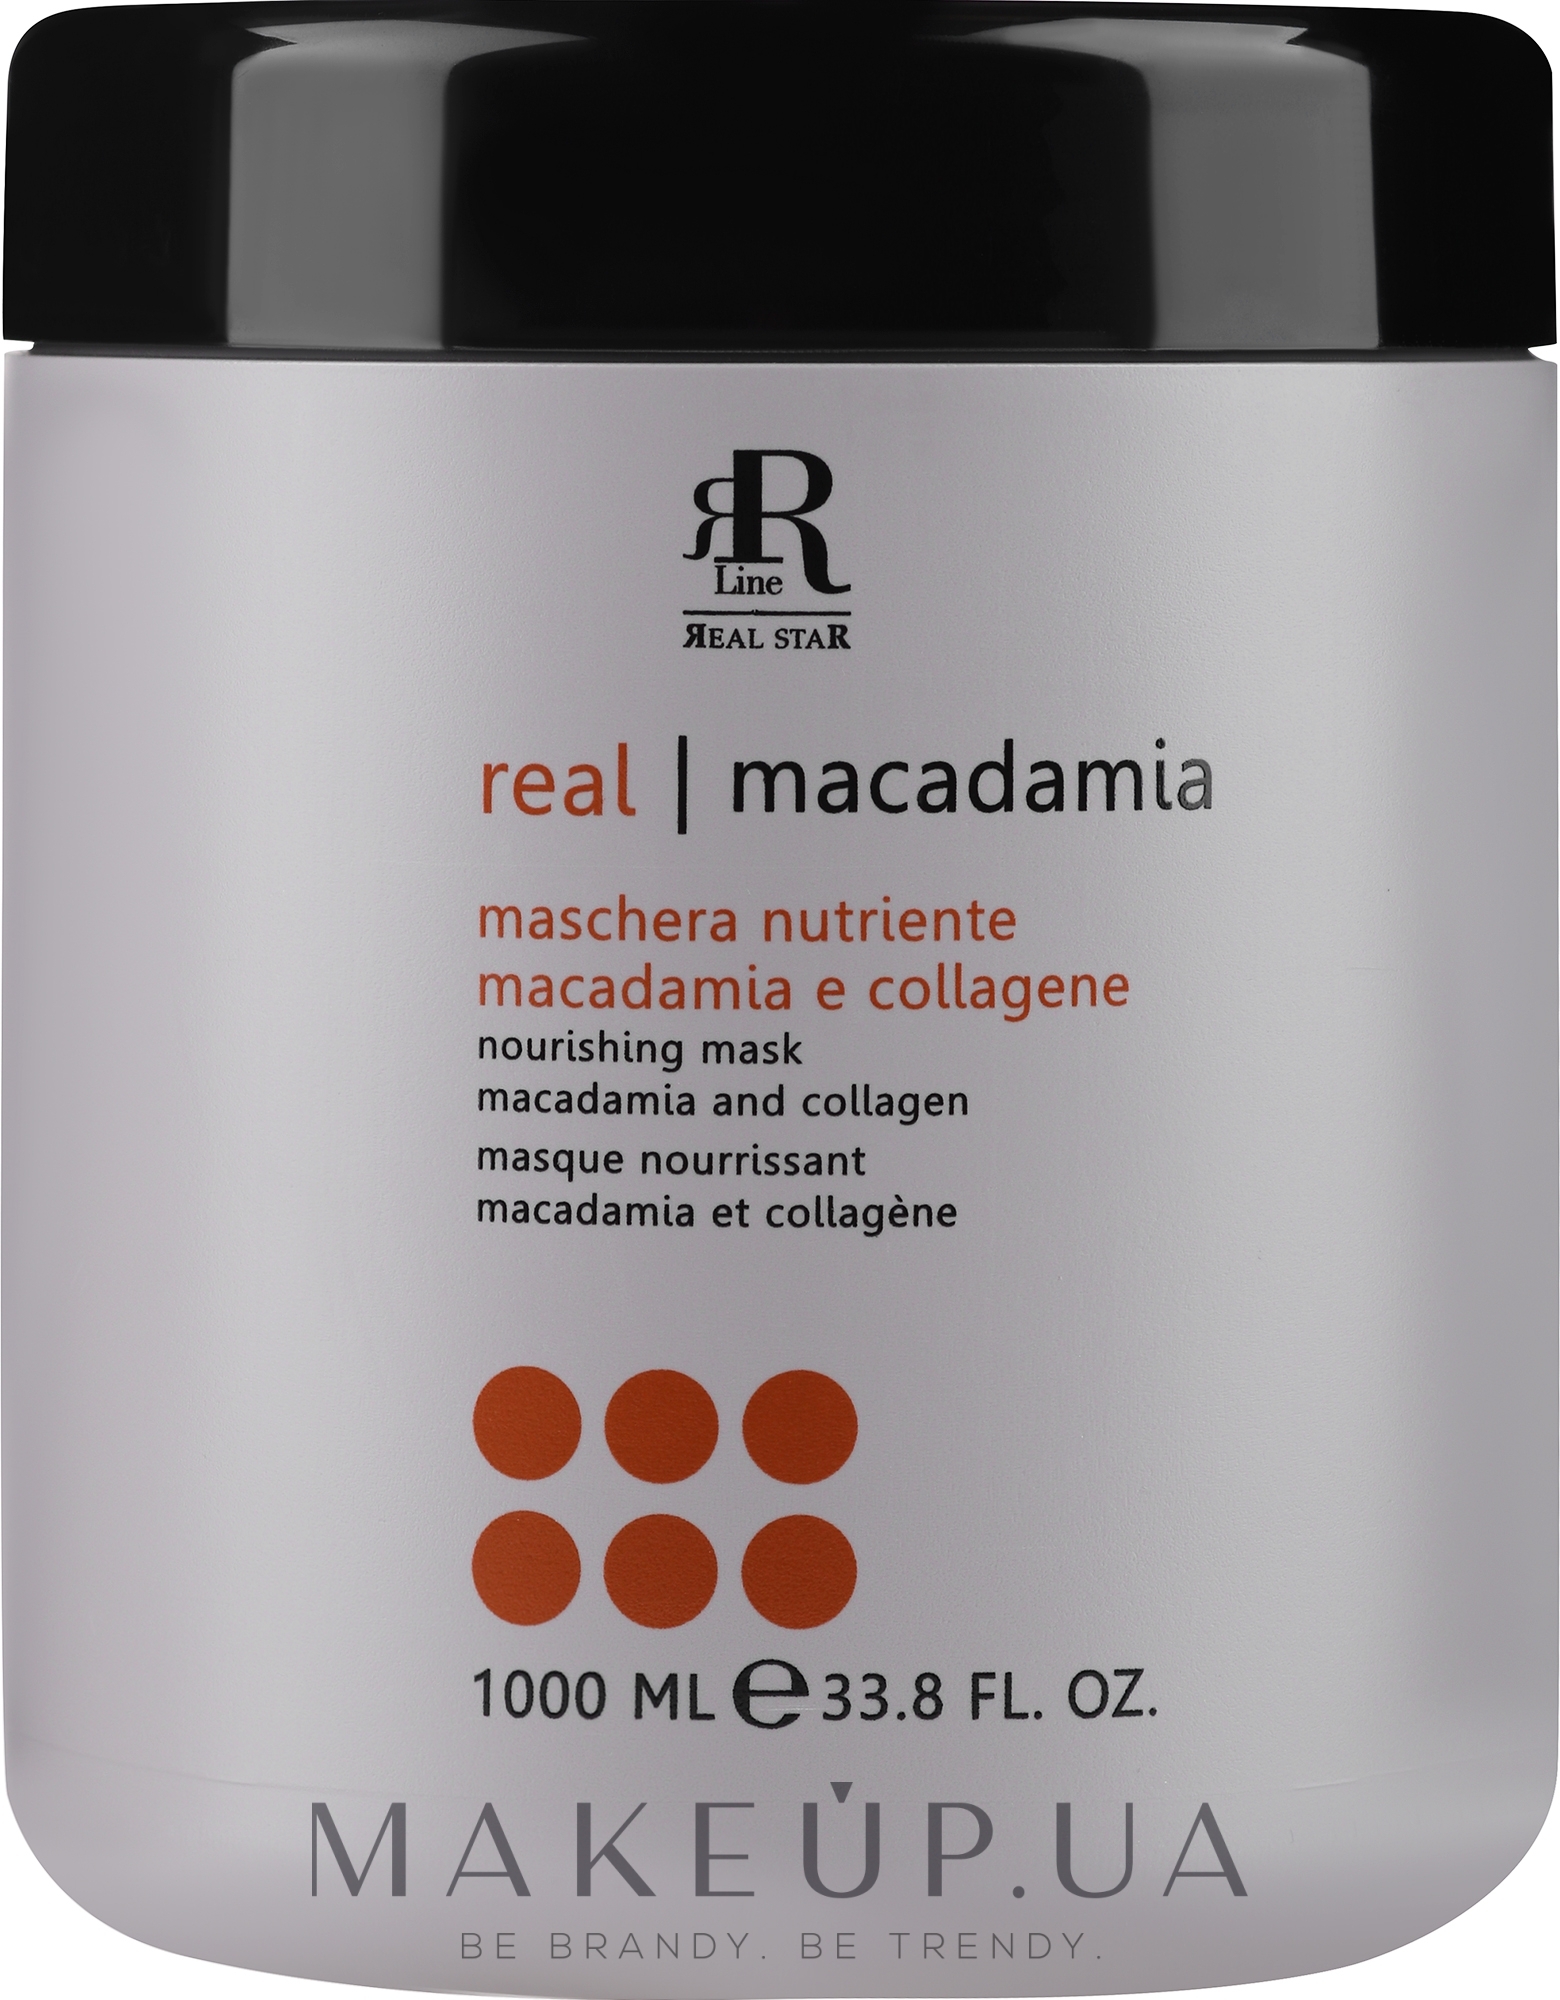 Маска для волос с маслом макадамии и коллагеном - RR Line Macadamia Star — фото 1000ml